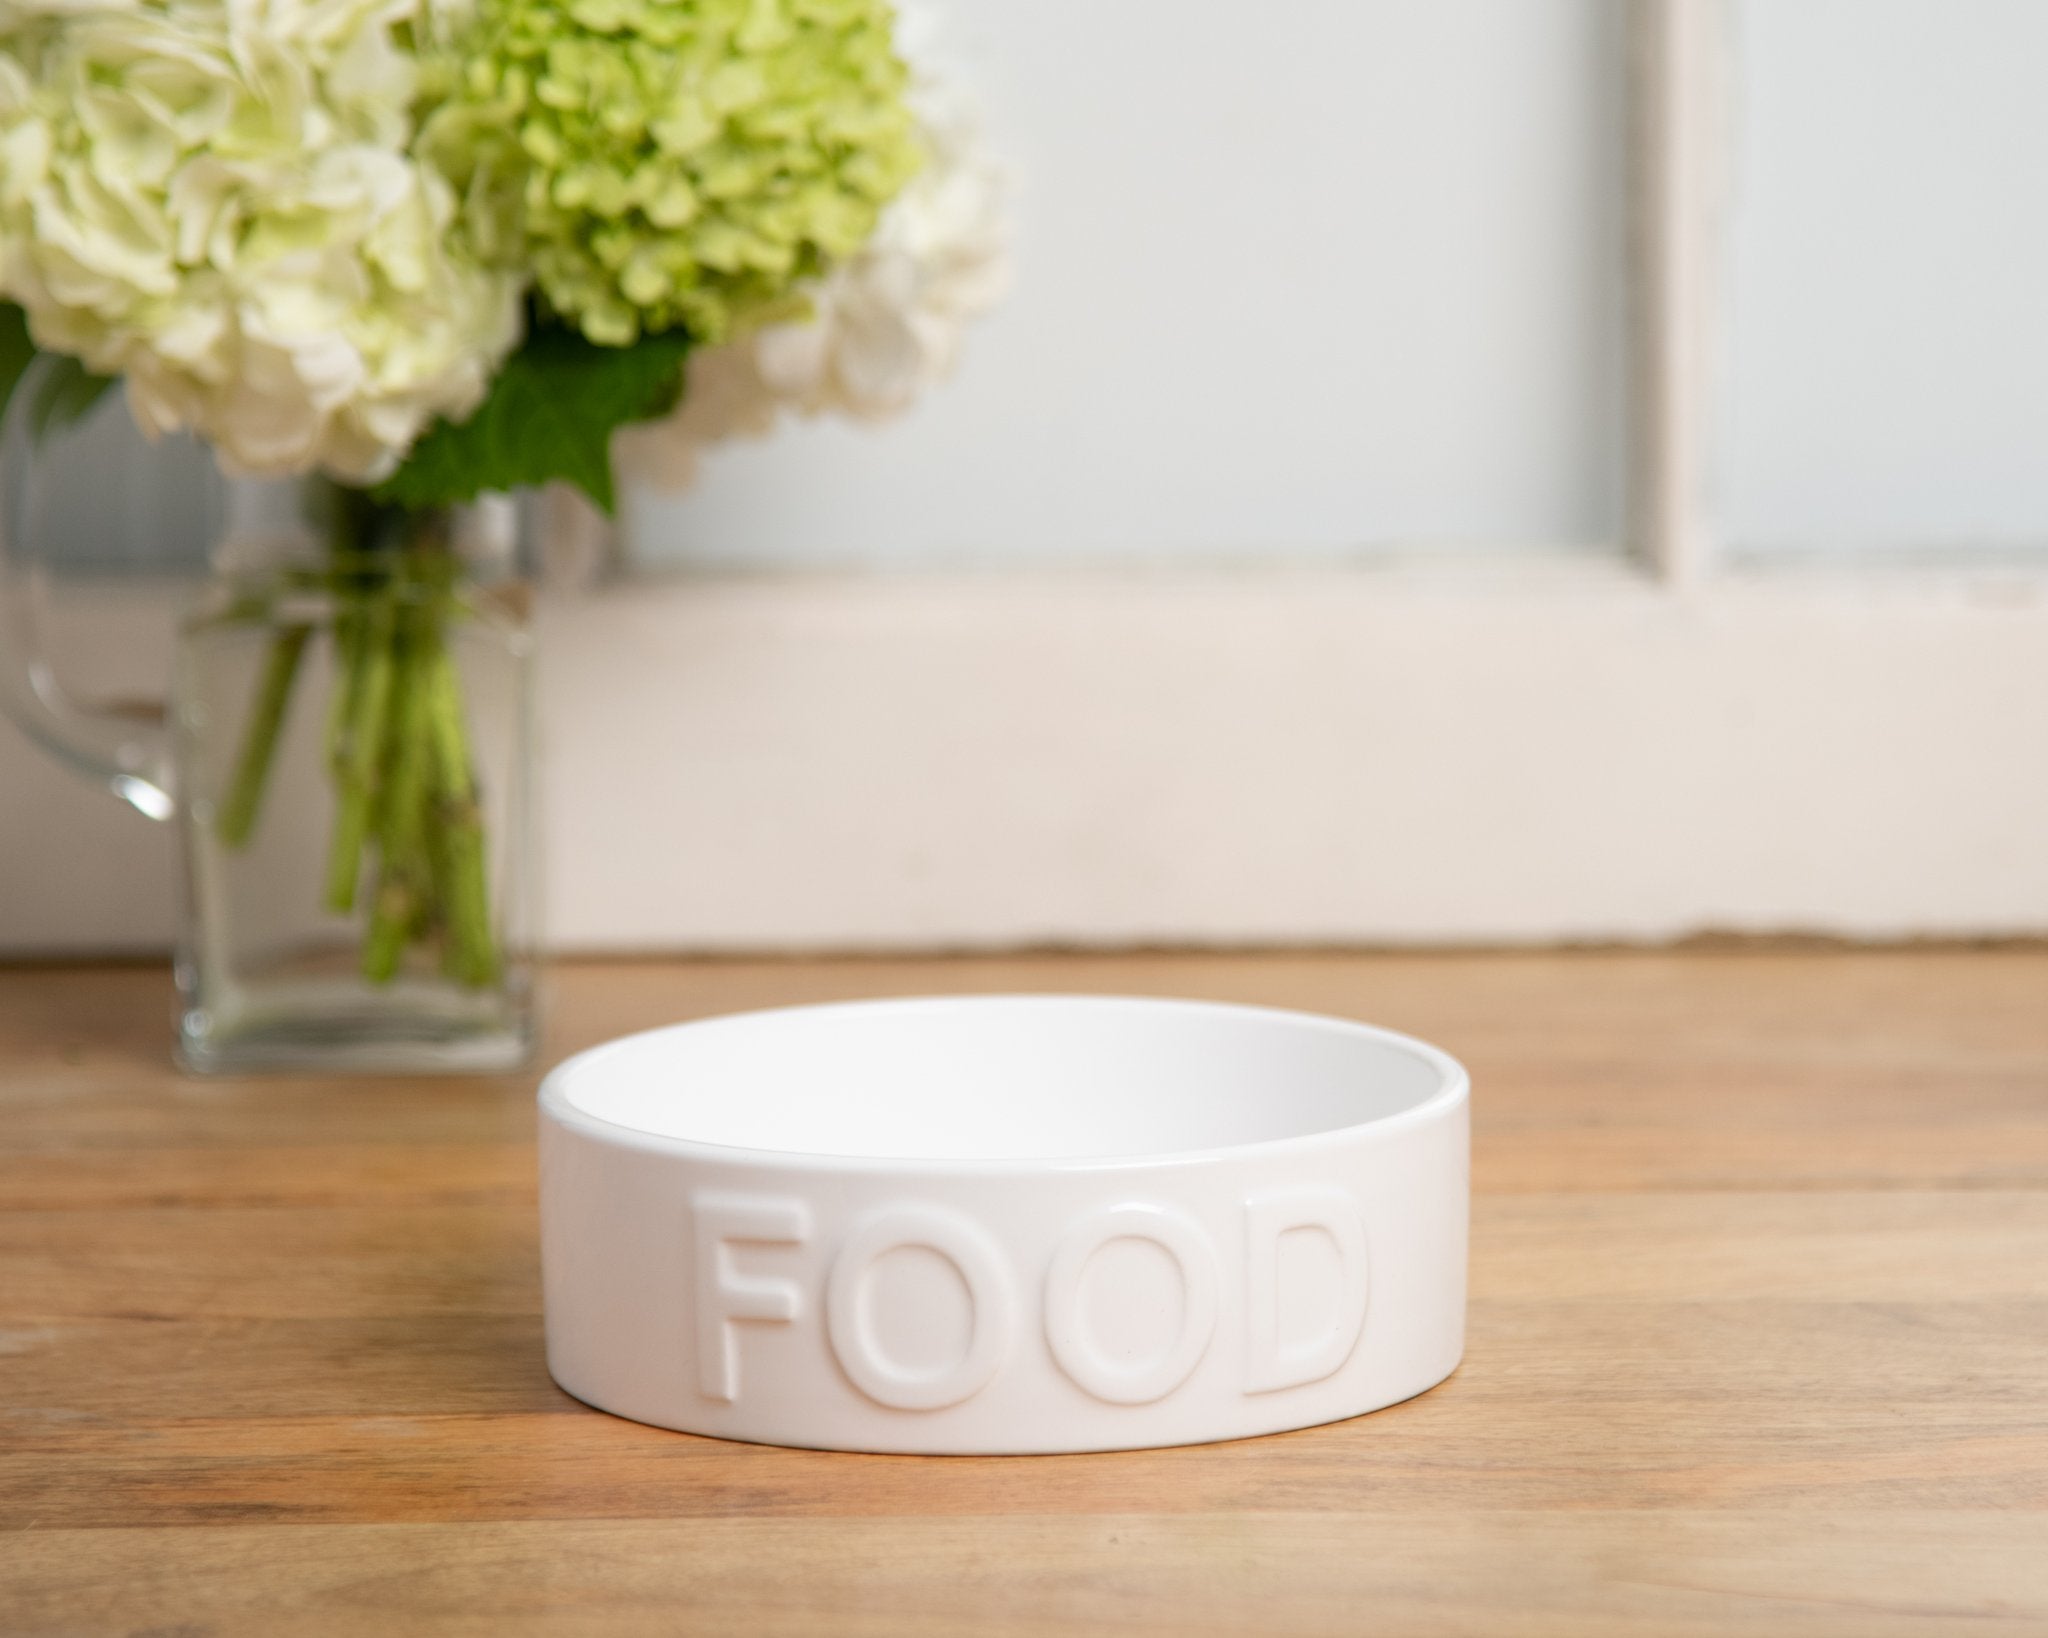 Park Life Designs Classic Food Pet Bowl, Medium White